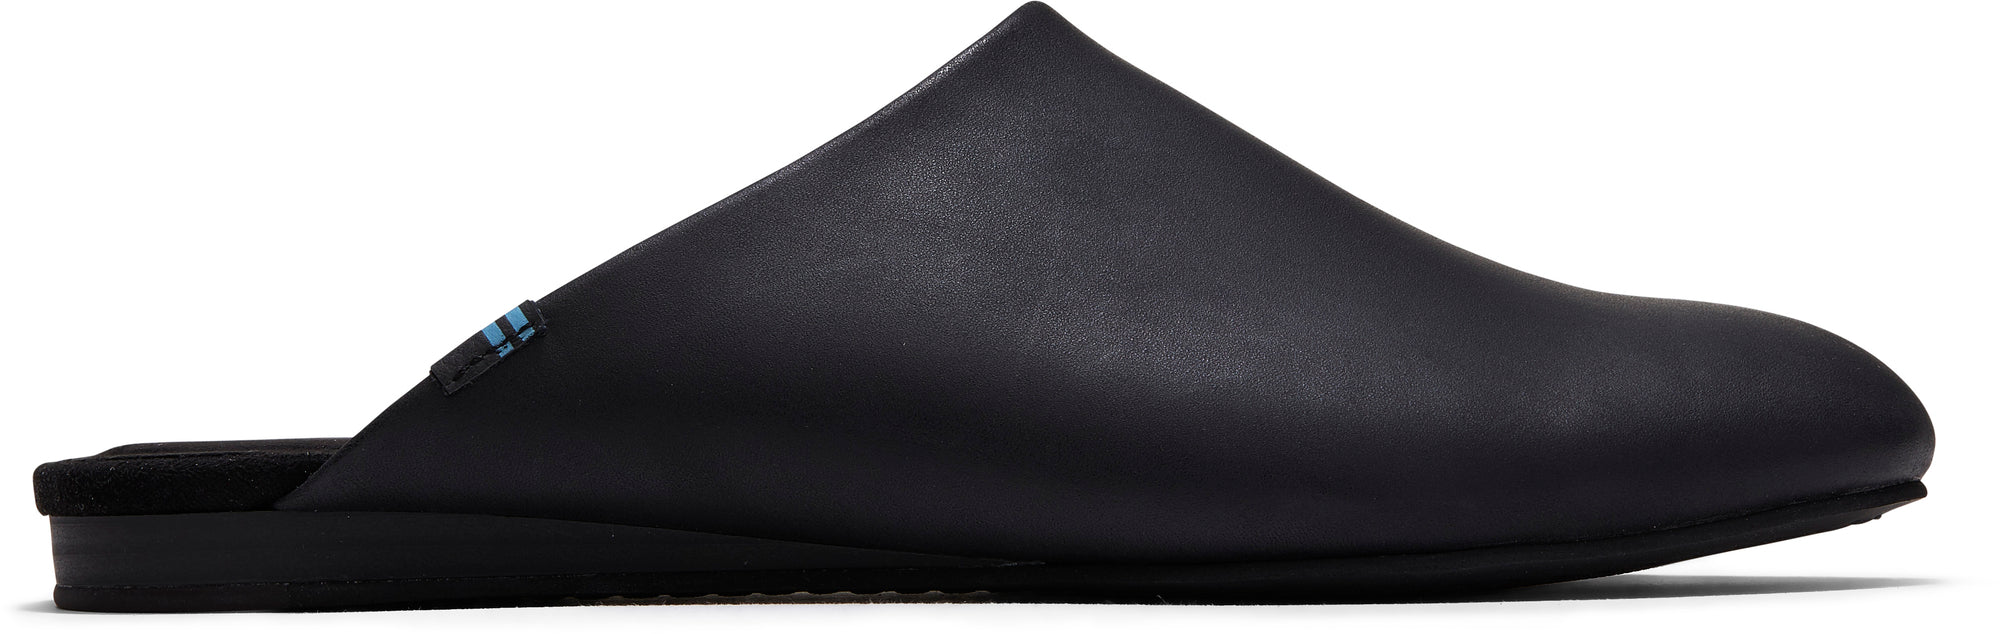 Dámské černé kožené pantofle TOMS Kelli Mule